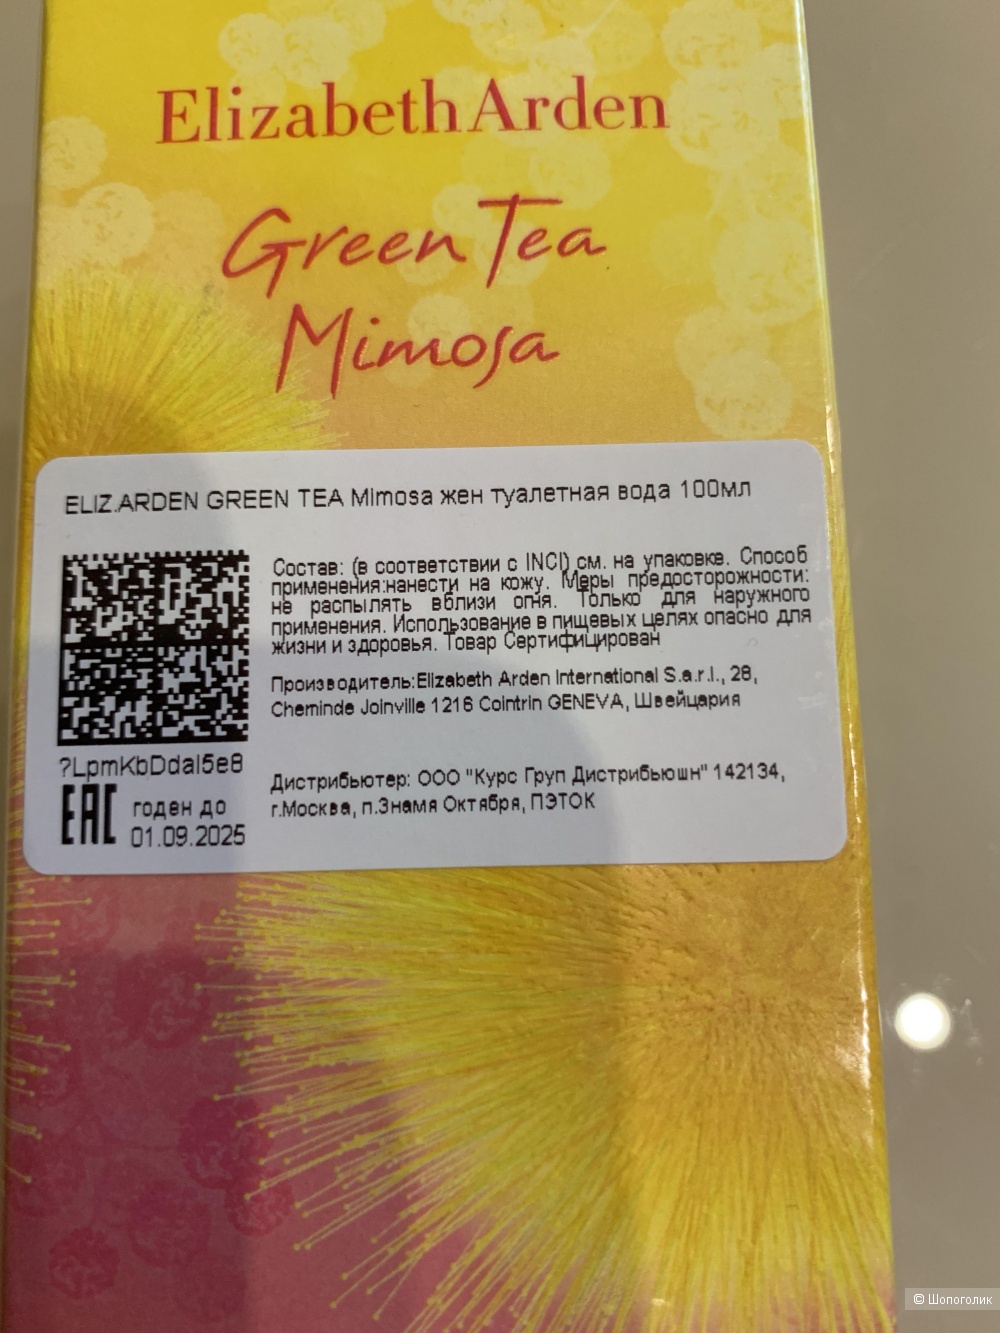 Elizabeth Arden Green Tea Mimoza 100ml